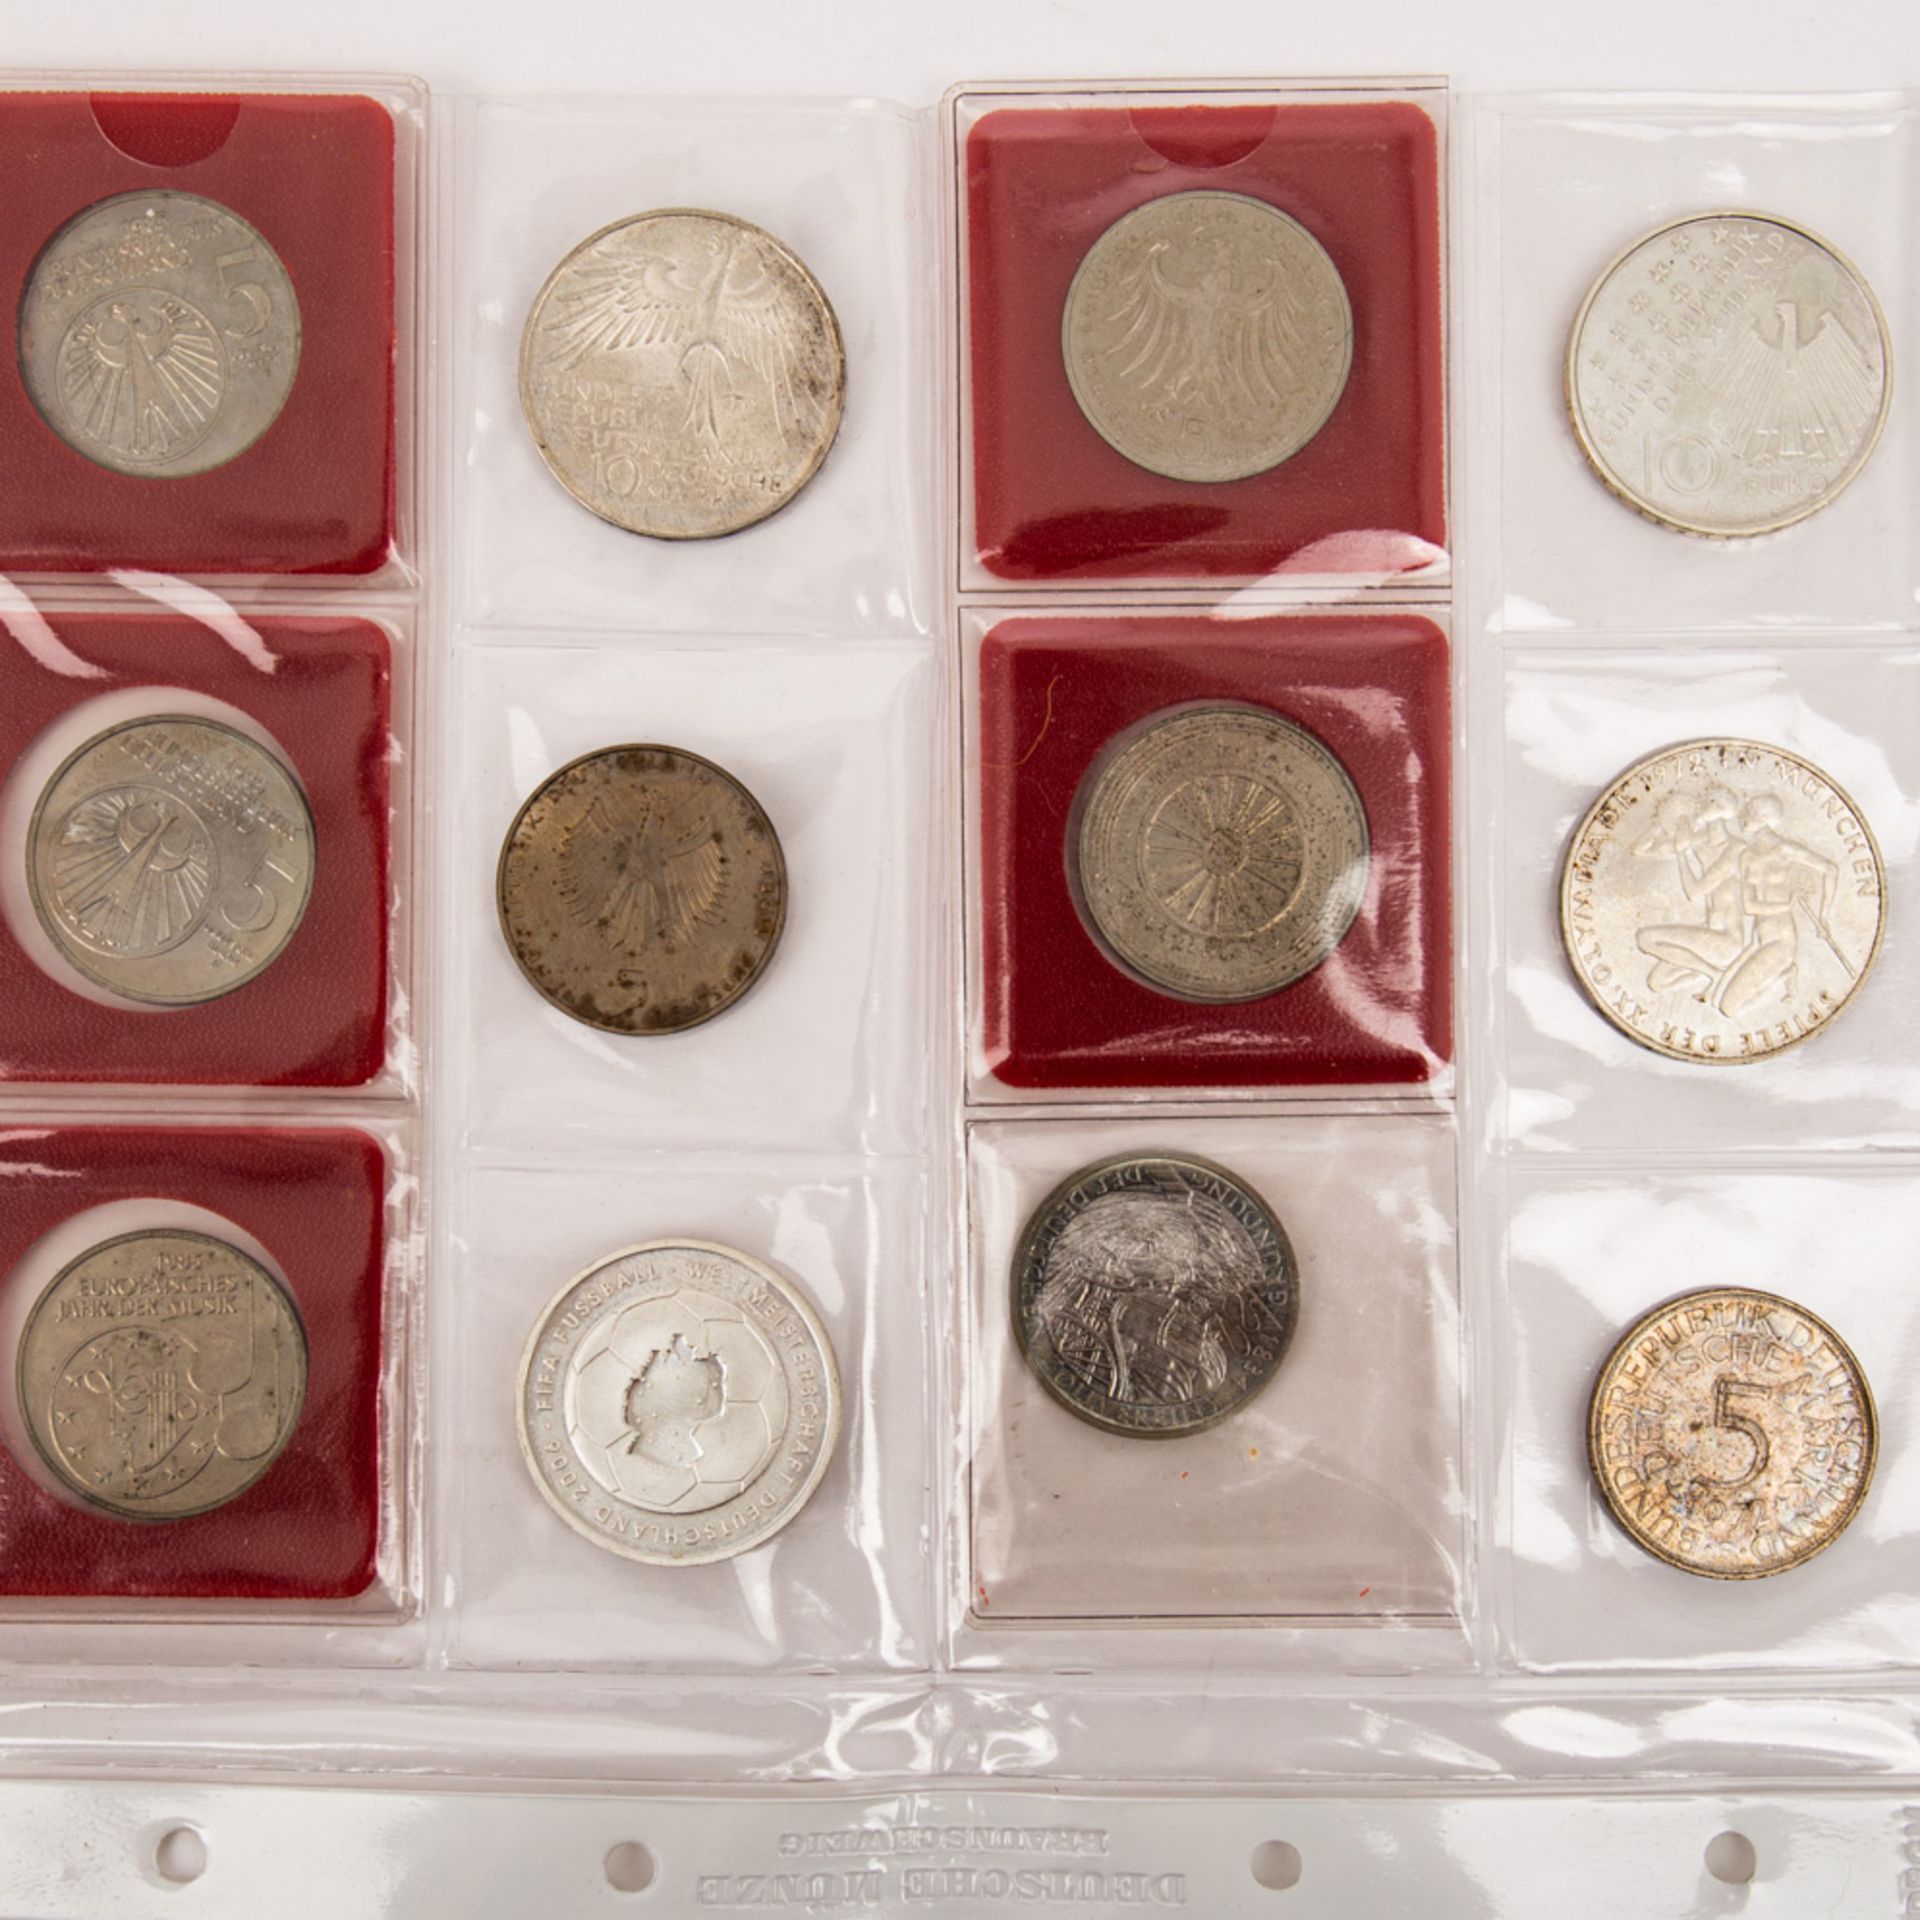 BRD - Konvolut moderner Gedenkprägungen, überwiegend DM Münzen, teils in Silber. FRG - A collection - Bild 3 aus 3